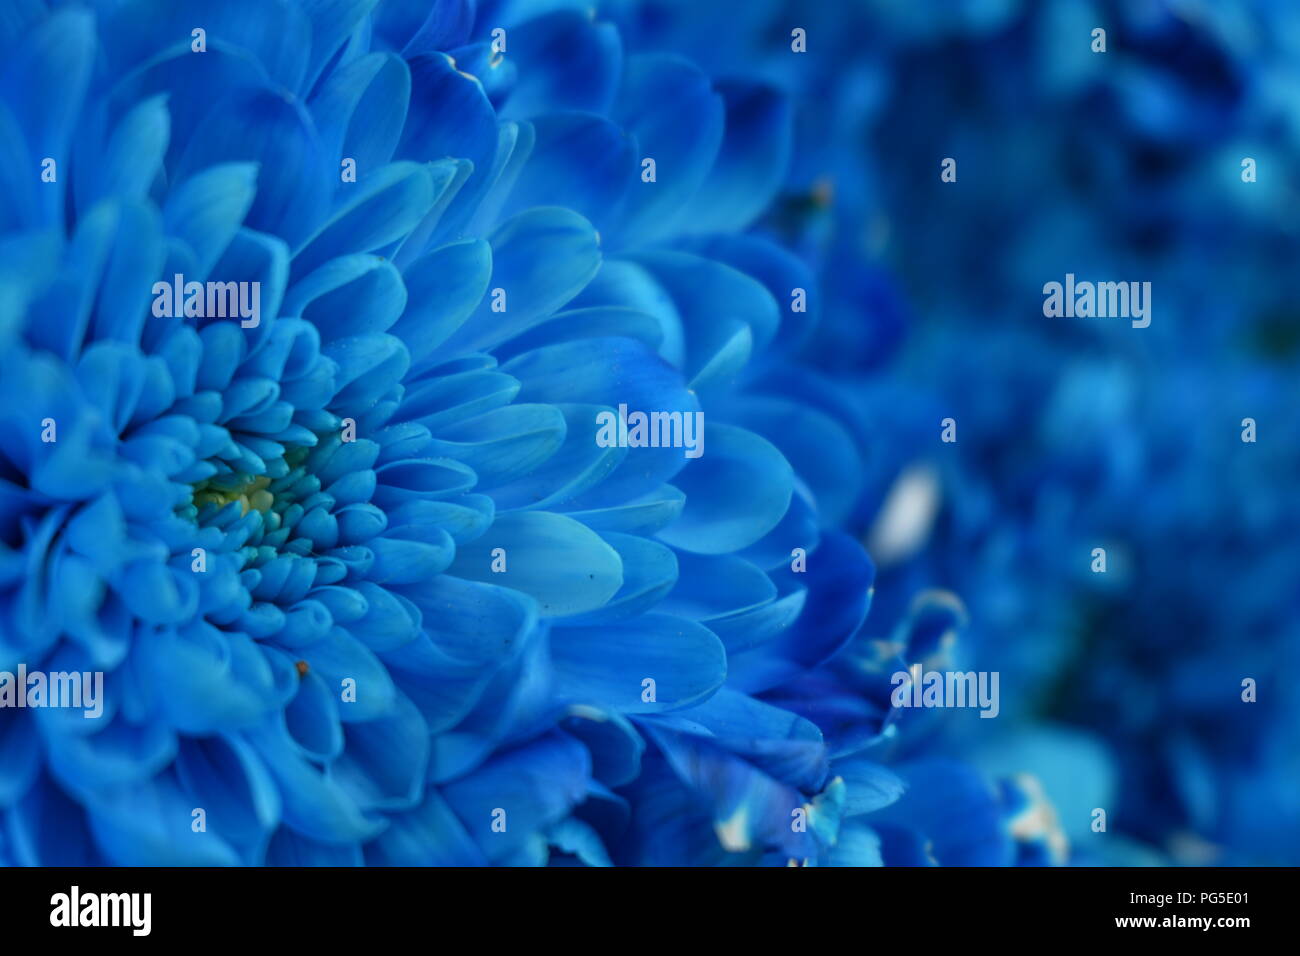 Die Schönheit der Chrysantheme. Ist wirklich eine schöne Blume mit seinem Licht blaue Farbe und die Art und Weise, wie sie blüht wirklich meine Augen erfassen. Stockfoto